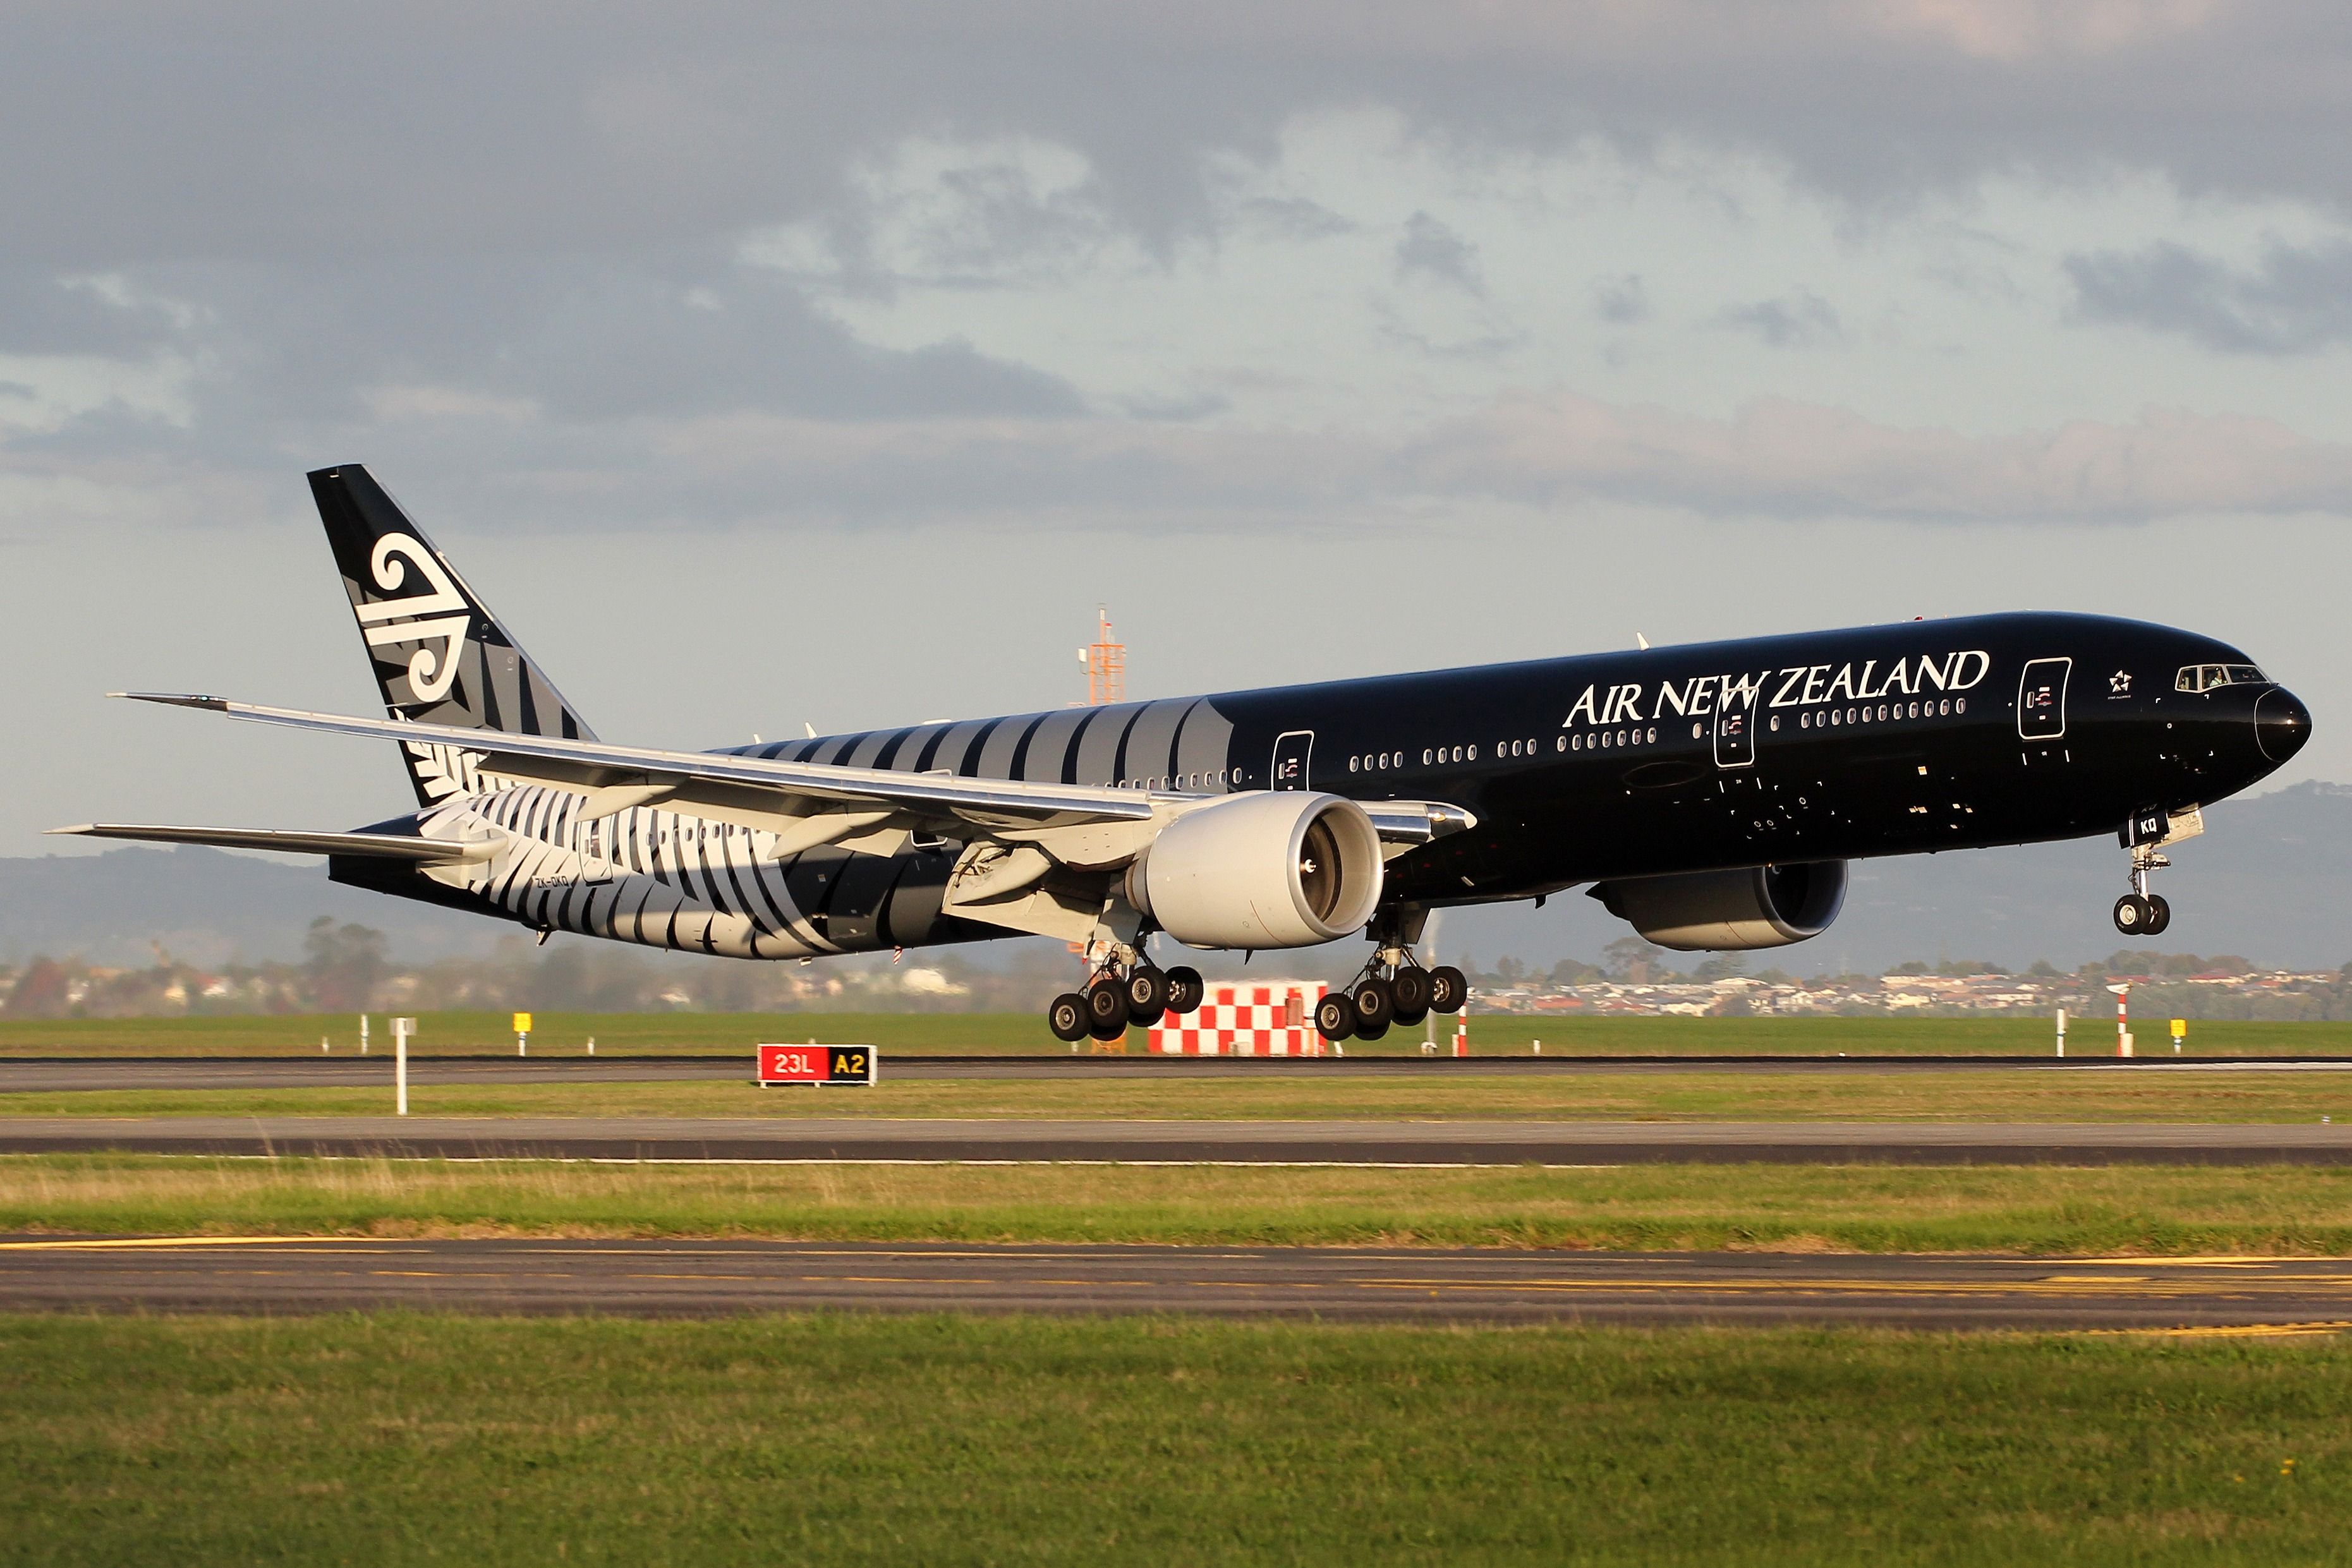 An Air New Zealand Boeing 777-300ER landing at Auckland Airport.